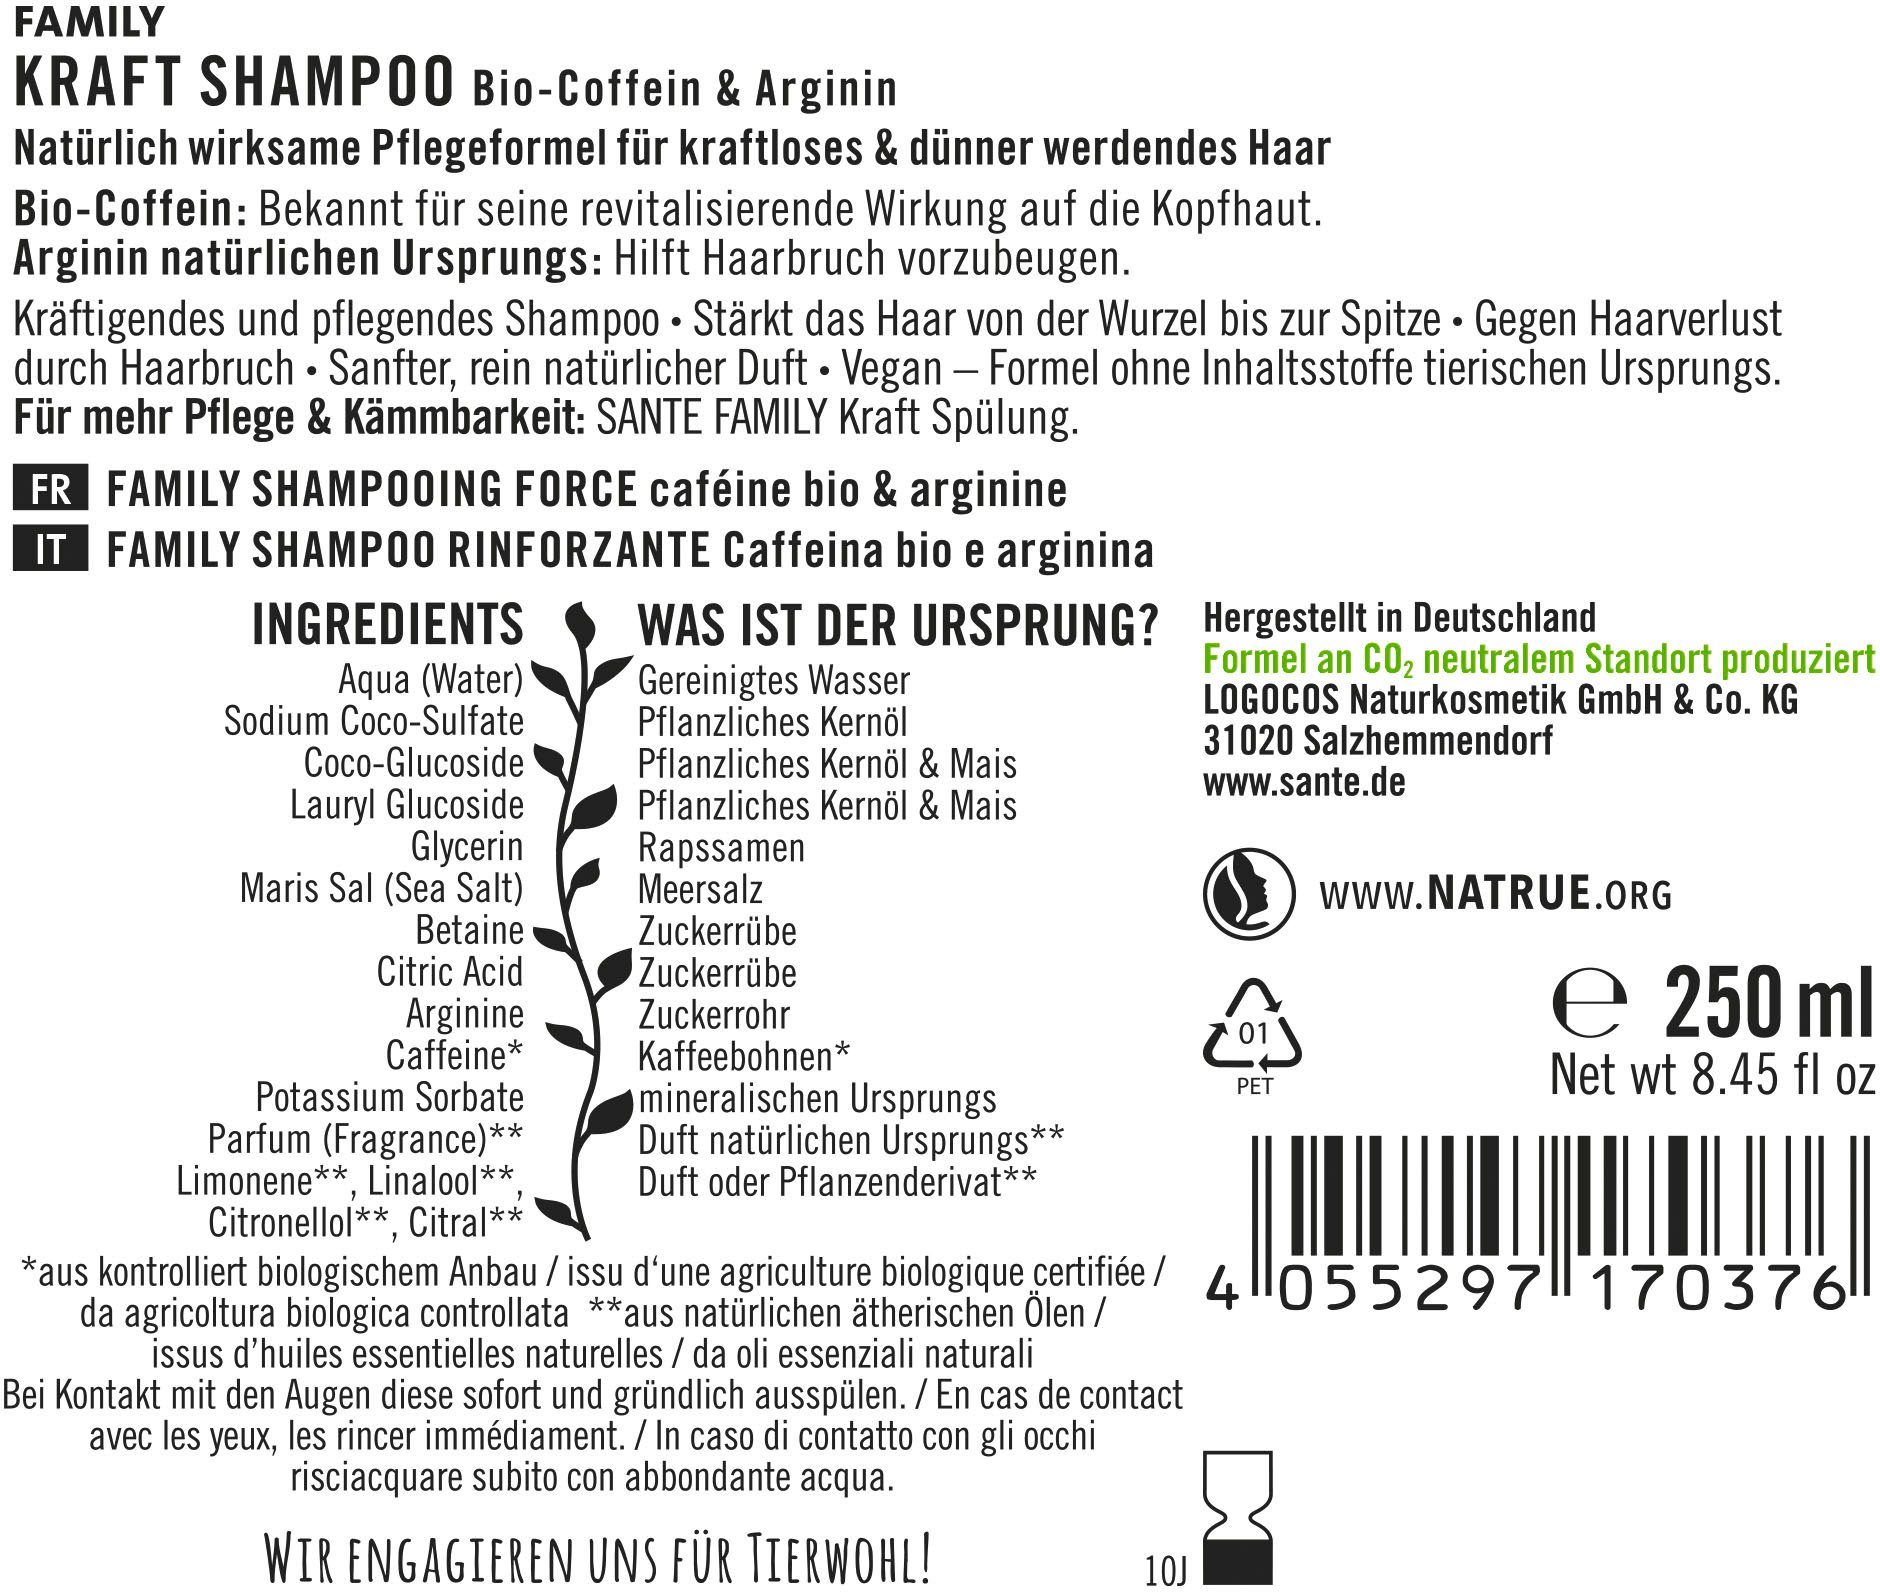 Shampoo Haarshampoo Kraft SANTE